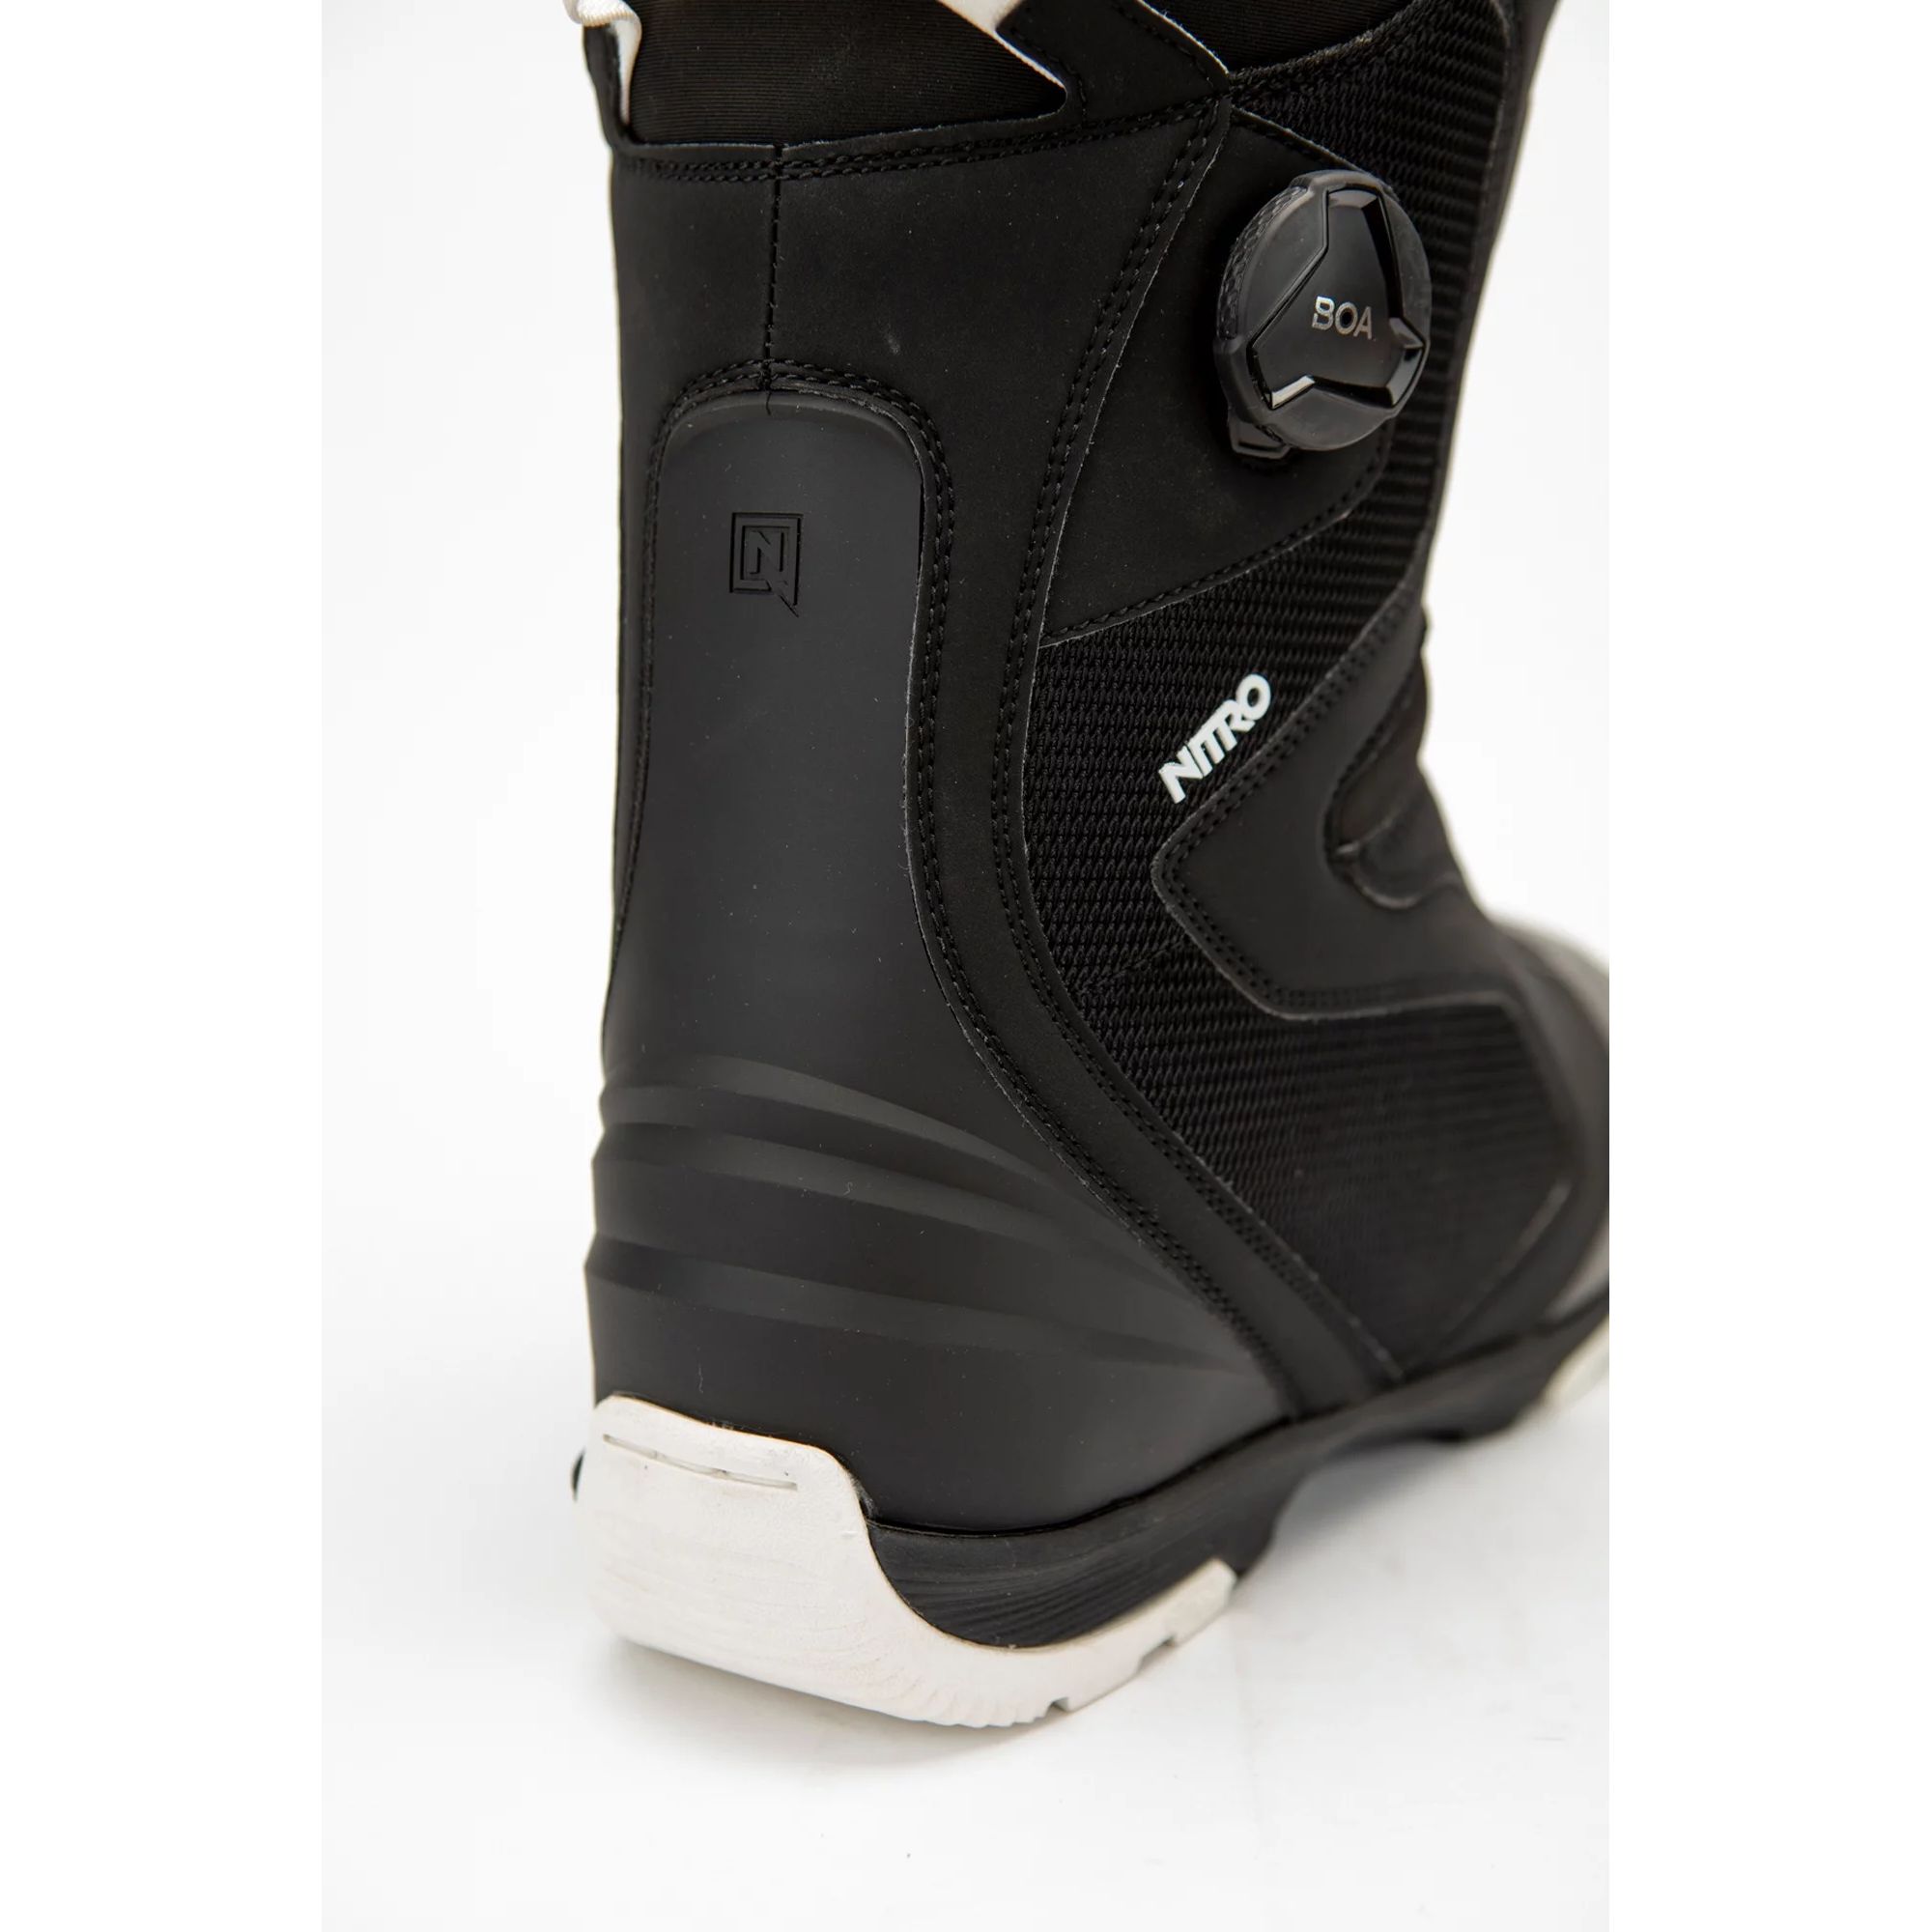 Boots Snowboard -  nitro CLUB BOA